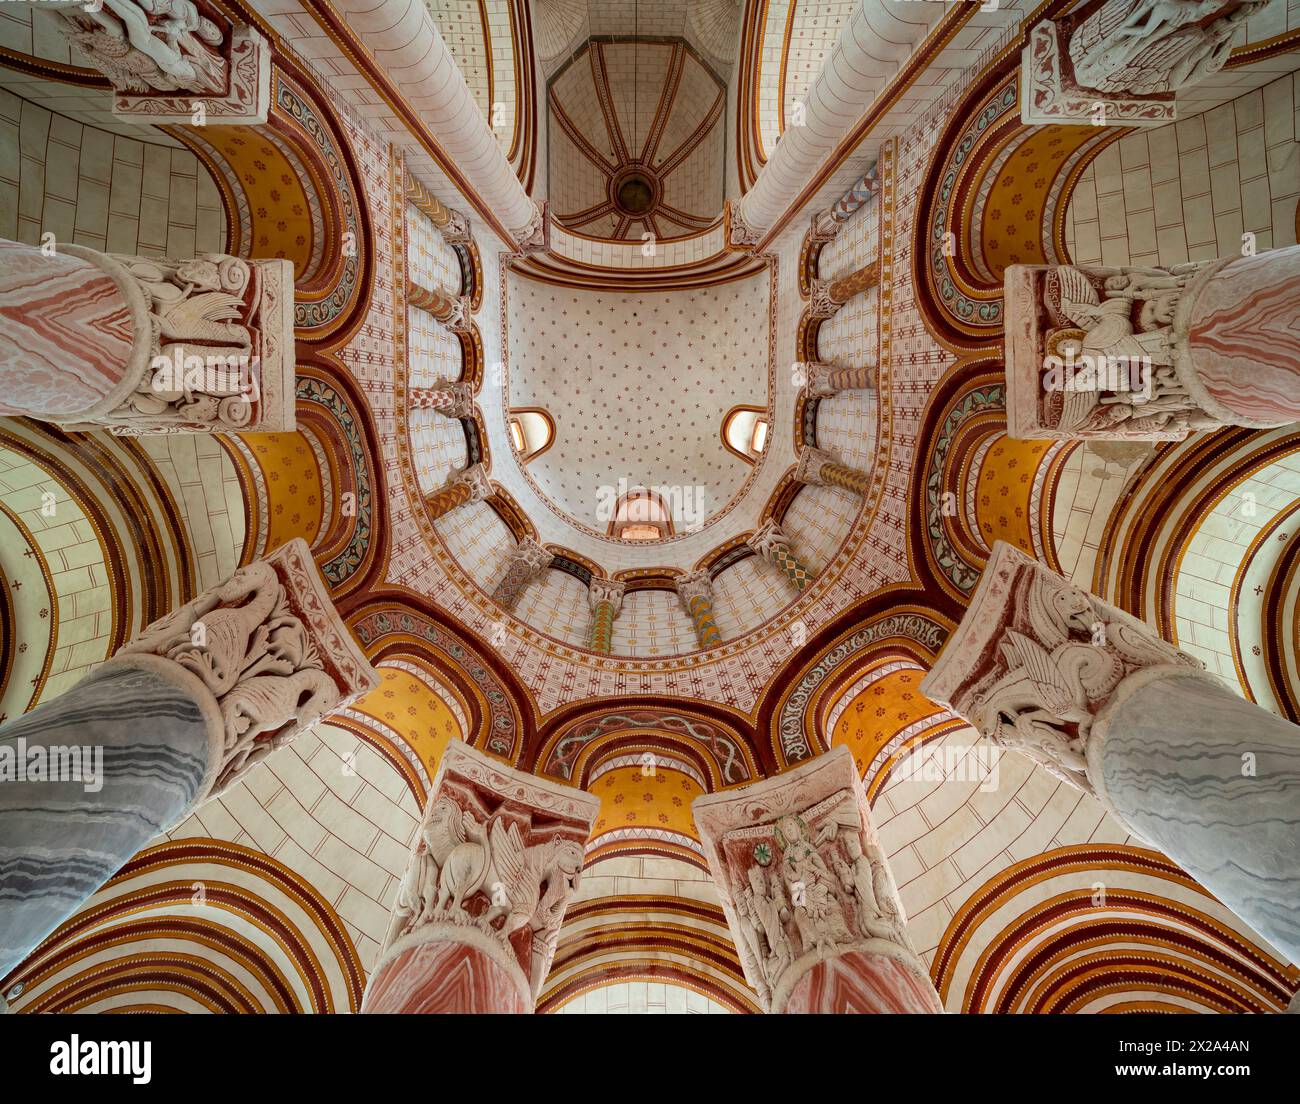 Chauvigny, St-Pierre, Blick in das Chorgewölbe mit Kapitellen Banque D'Images